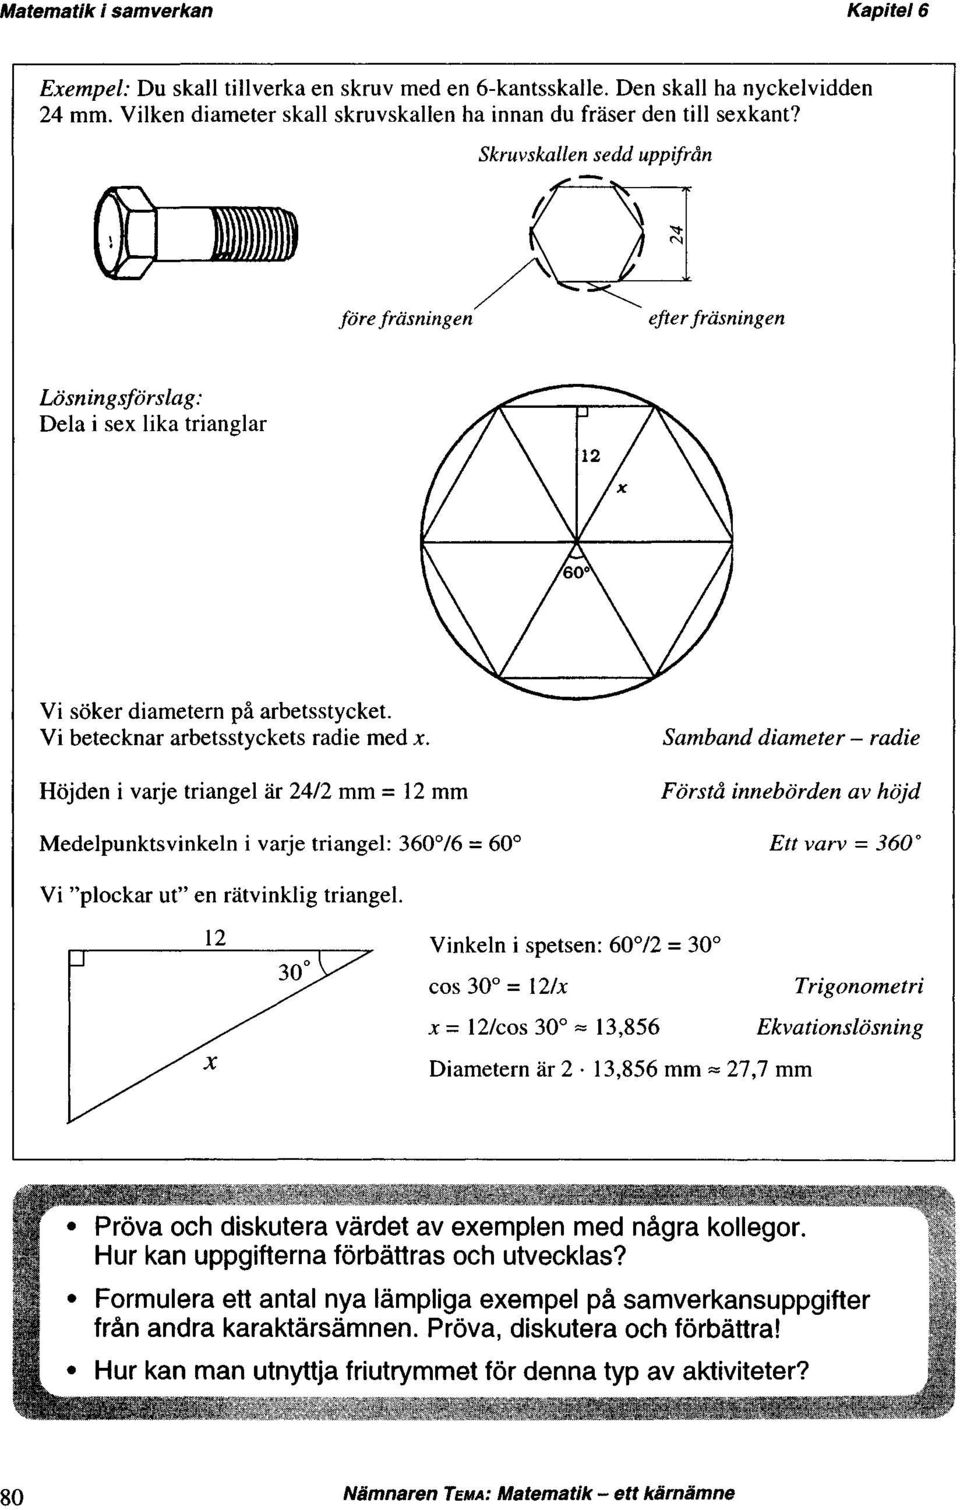 Höjden i varje triangel är 24/2 mm = 12 mm Medelpunktsvinkeln i varje triangel: 360 /6 = 60 Samband diameter - radie Förstå innebörden av höjd Ett varv = 360 Vi "plockar ut" en rätvinklig triangel.